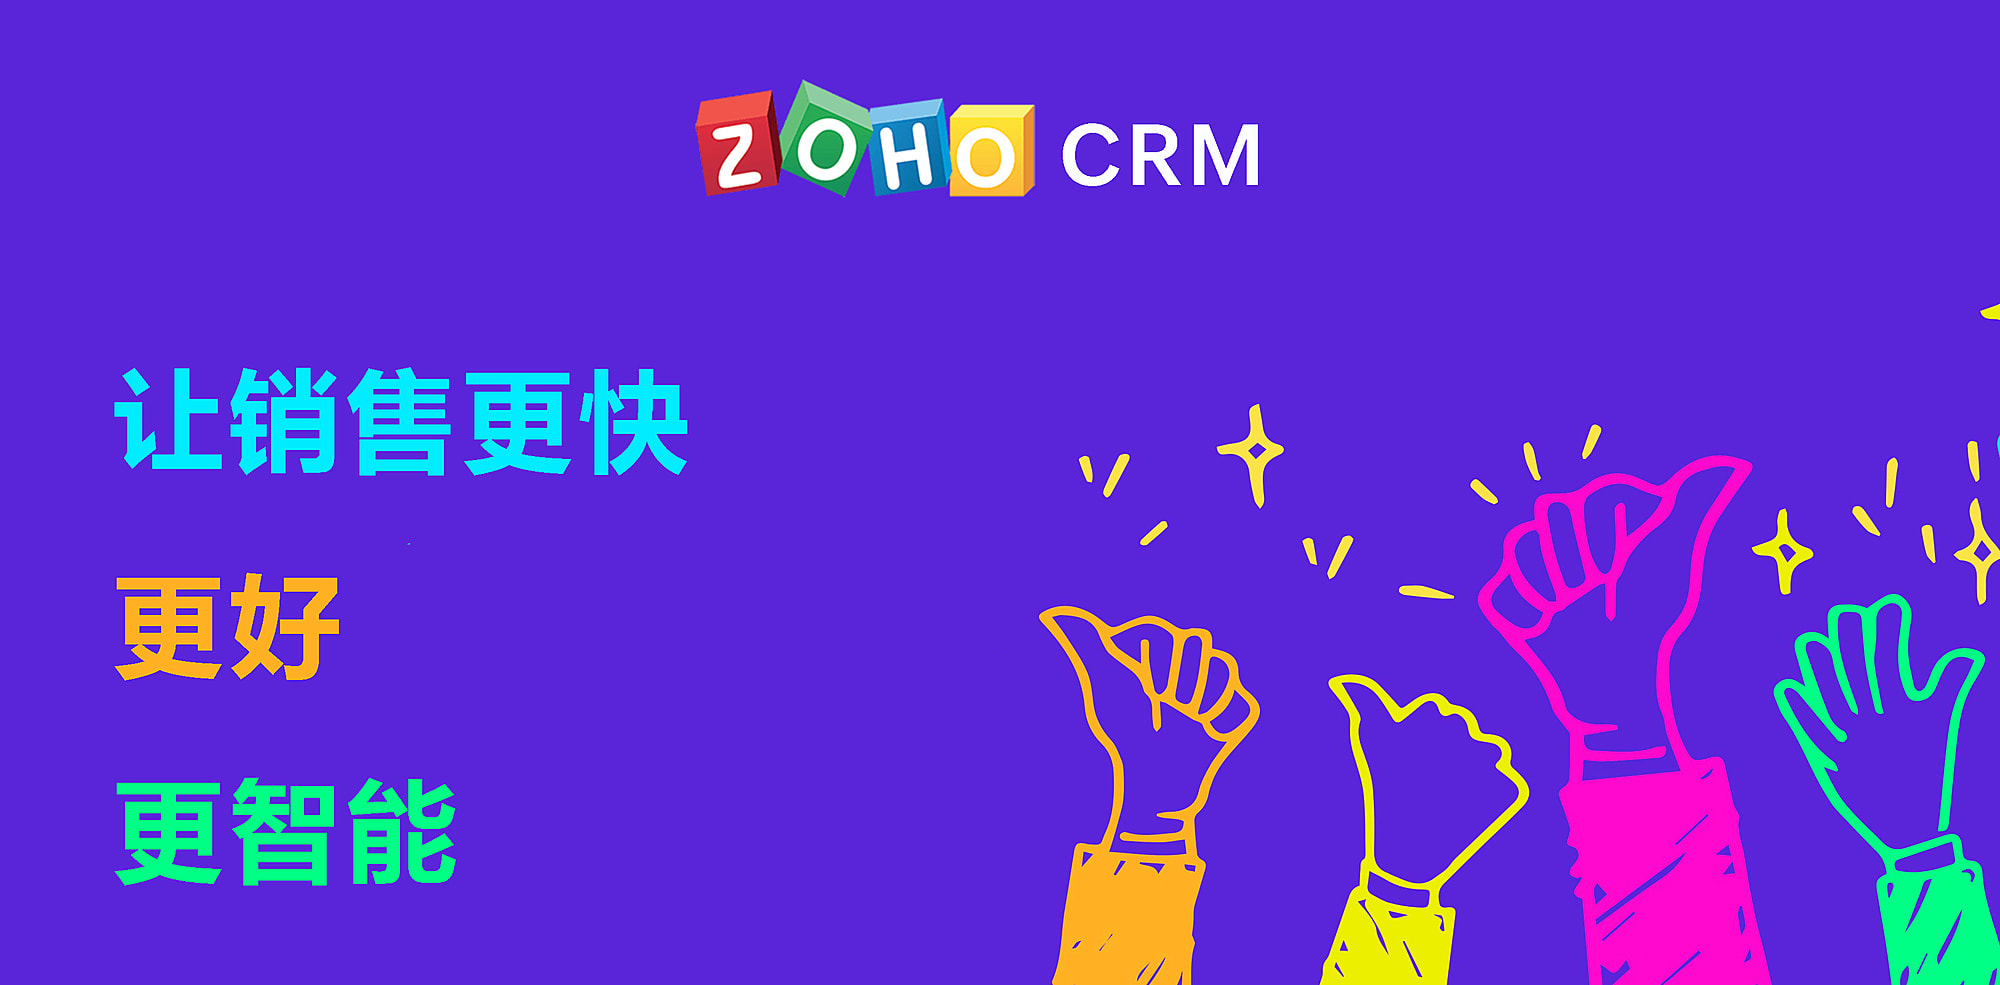 以客户为中心，Zoho CRM产品价值获高度认可